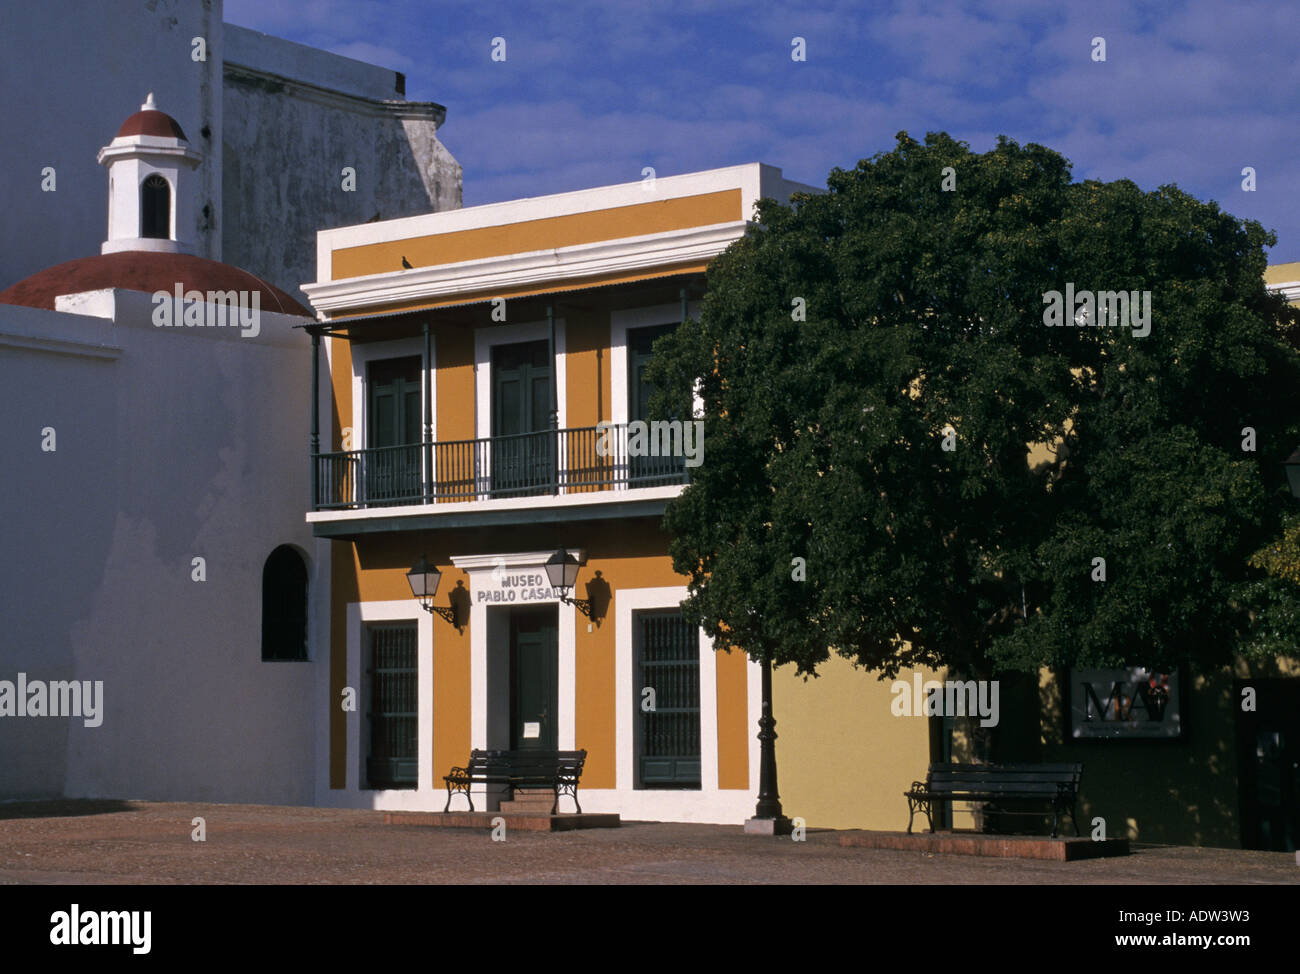 Musée Pablo Casals dans la Plaza San Jose dans la partie ancienne de San Juan Puertorico Caraïbes Banque D'Images